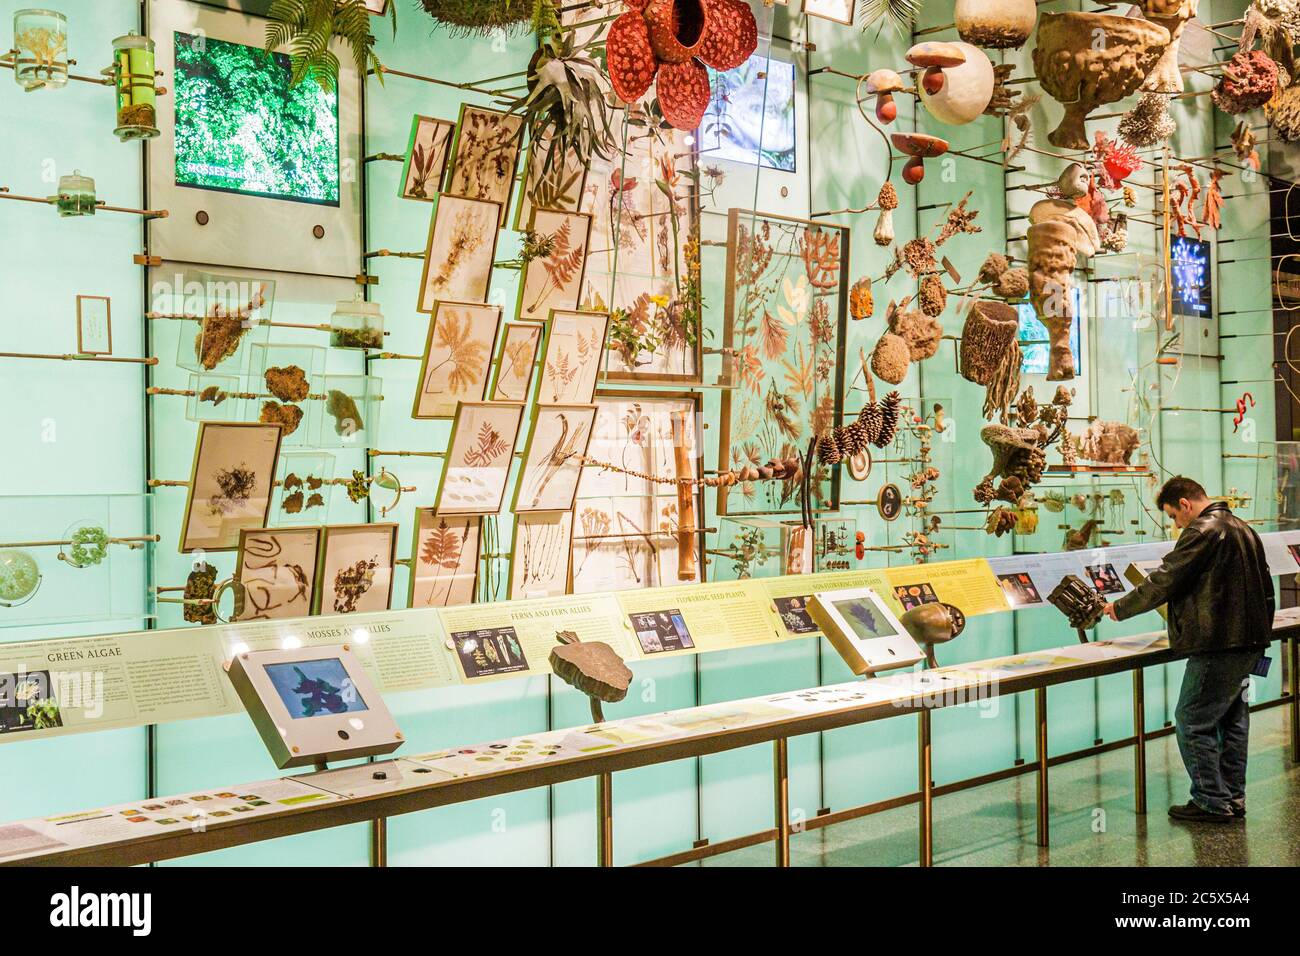 New York City,NYC NY Manhattan,Uptown,Central Park West,American Museum of Natural History,mostra interattiva,scienza,istruzione,biodiversità,specie, Foto Stock